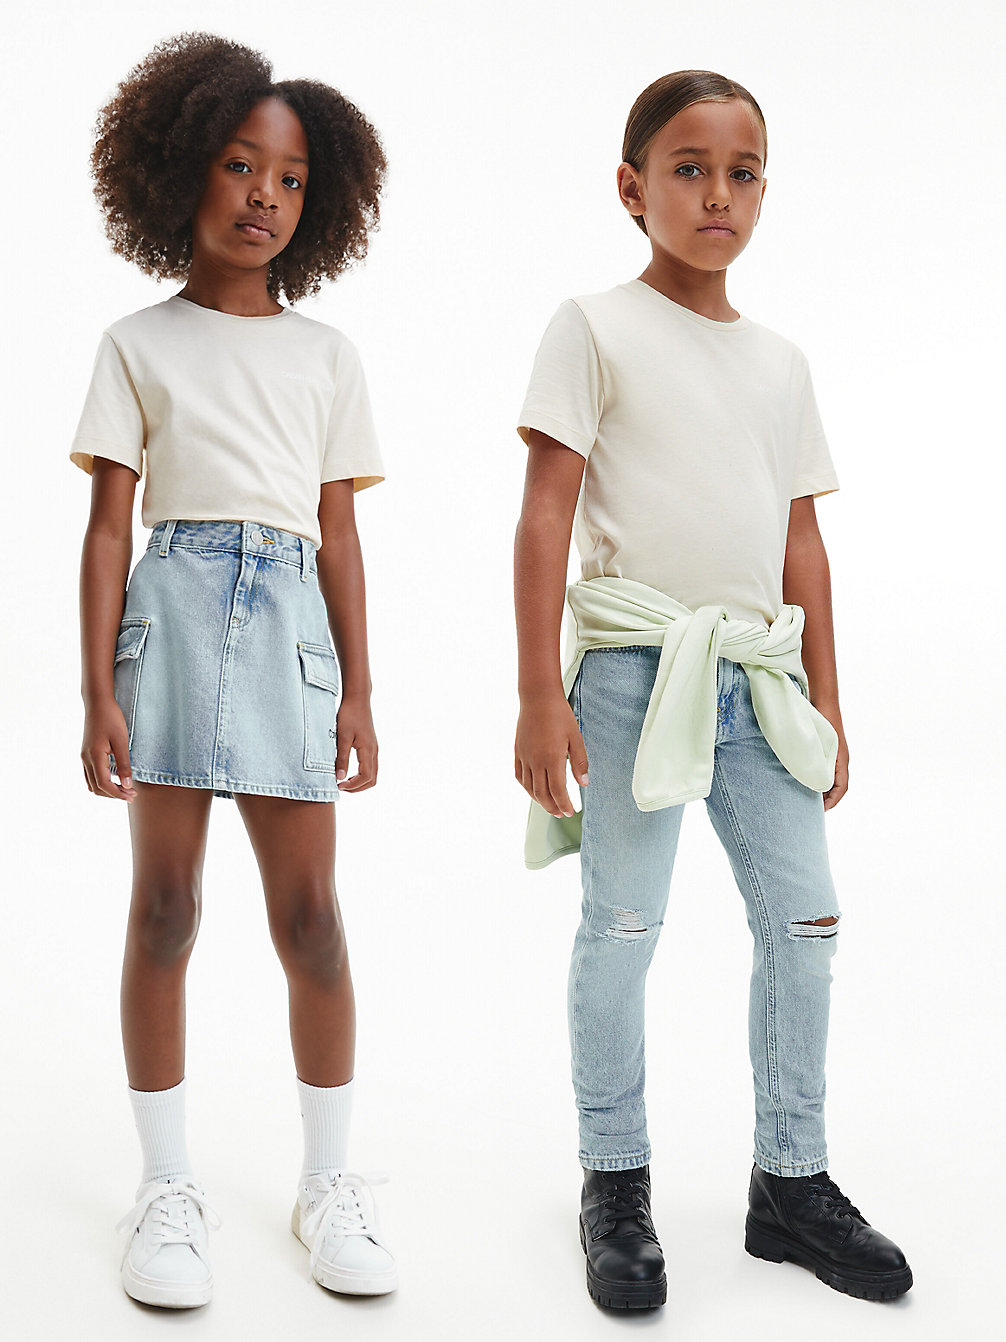 MUSLIN Unisex Organic Cotton T-Shirt undefined kids unisex Calvin Klein